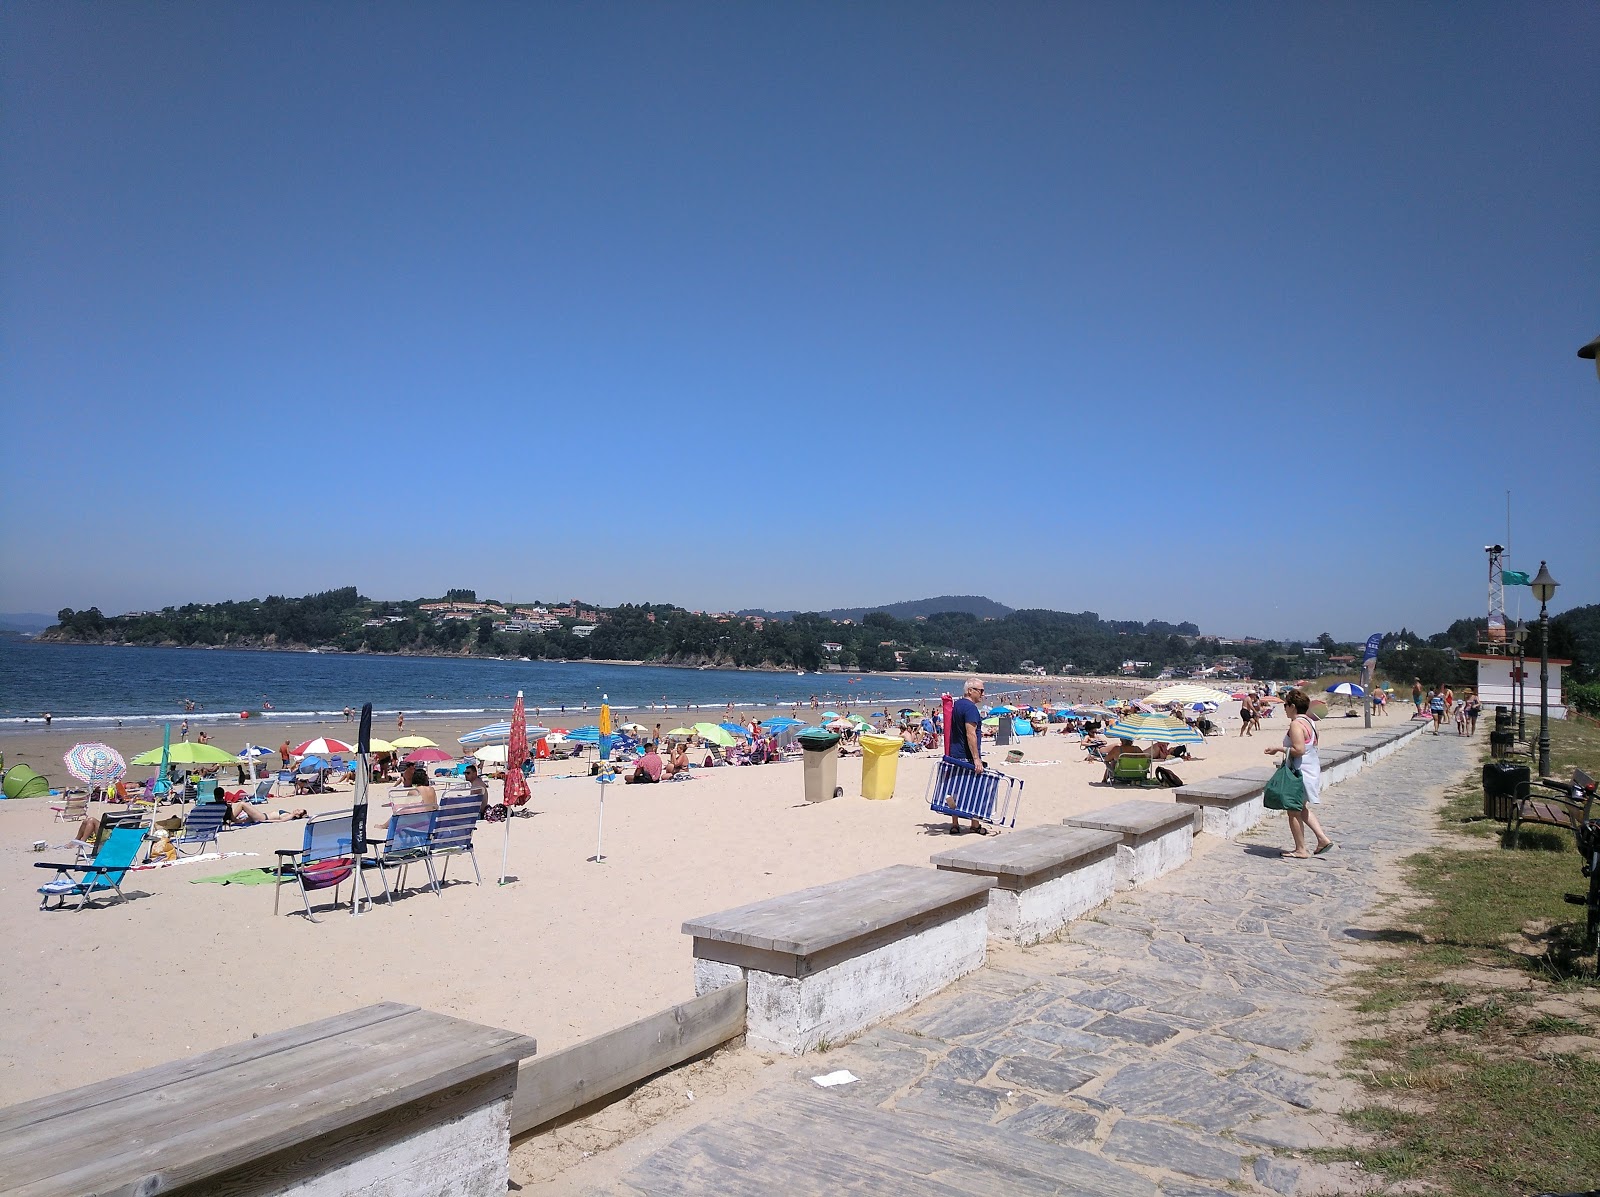 Praia de Mino'in fotoğrafı ve yerleşim